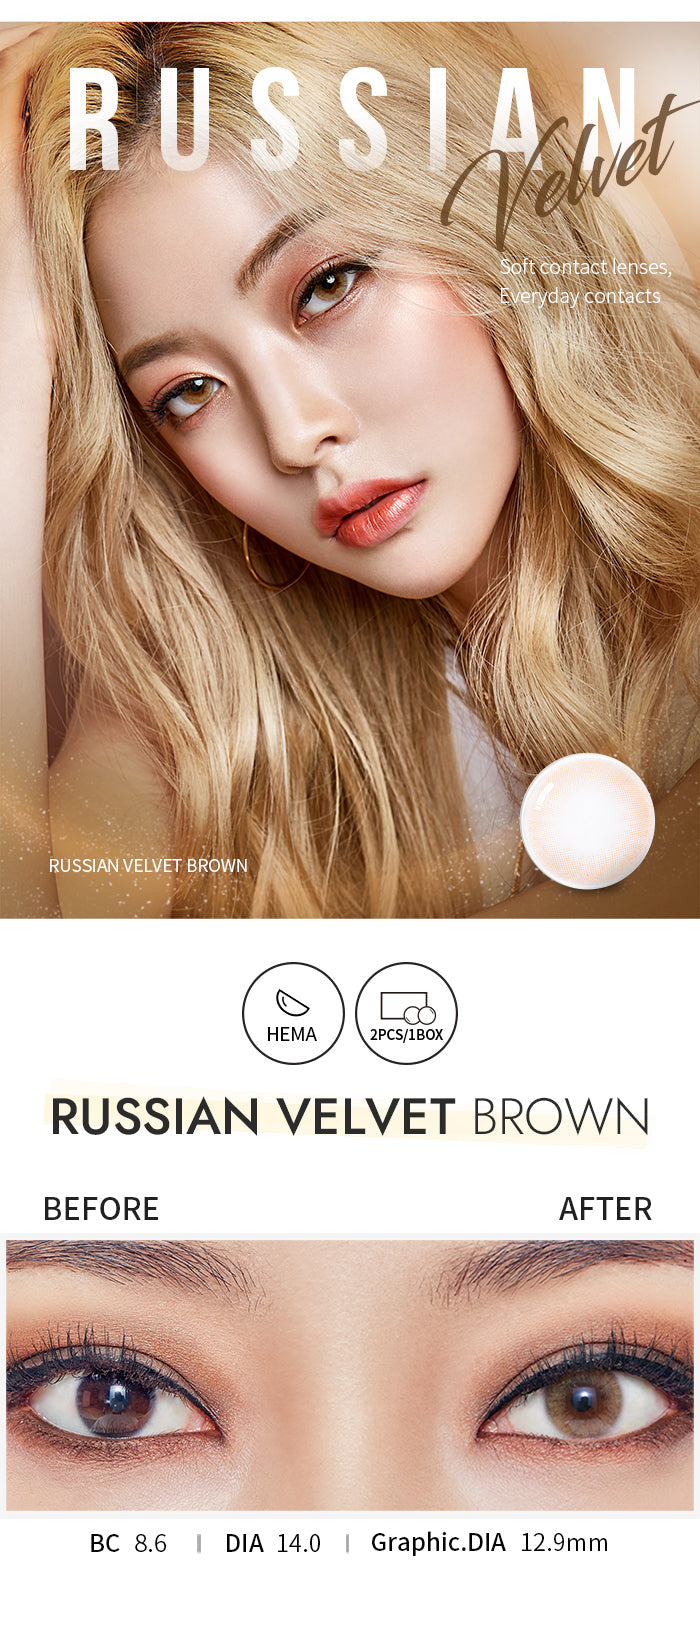 [Ready] O-Lens Russian Velvet Brown | 1 Month